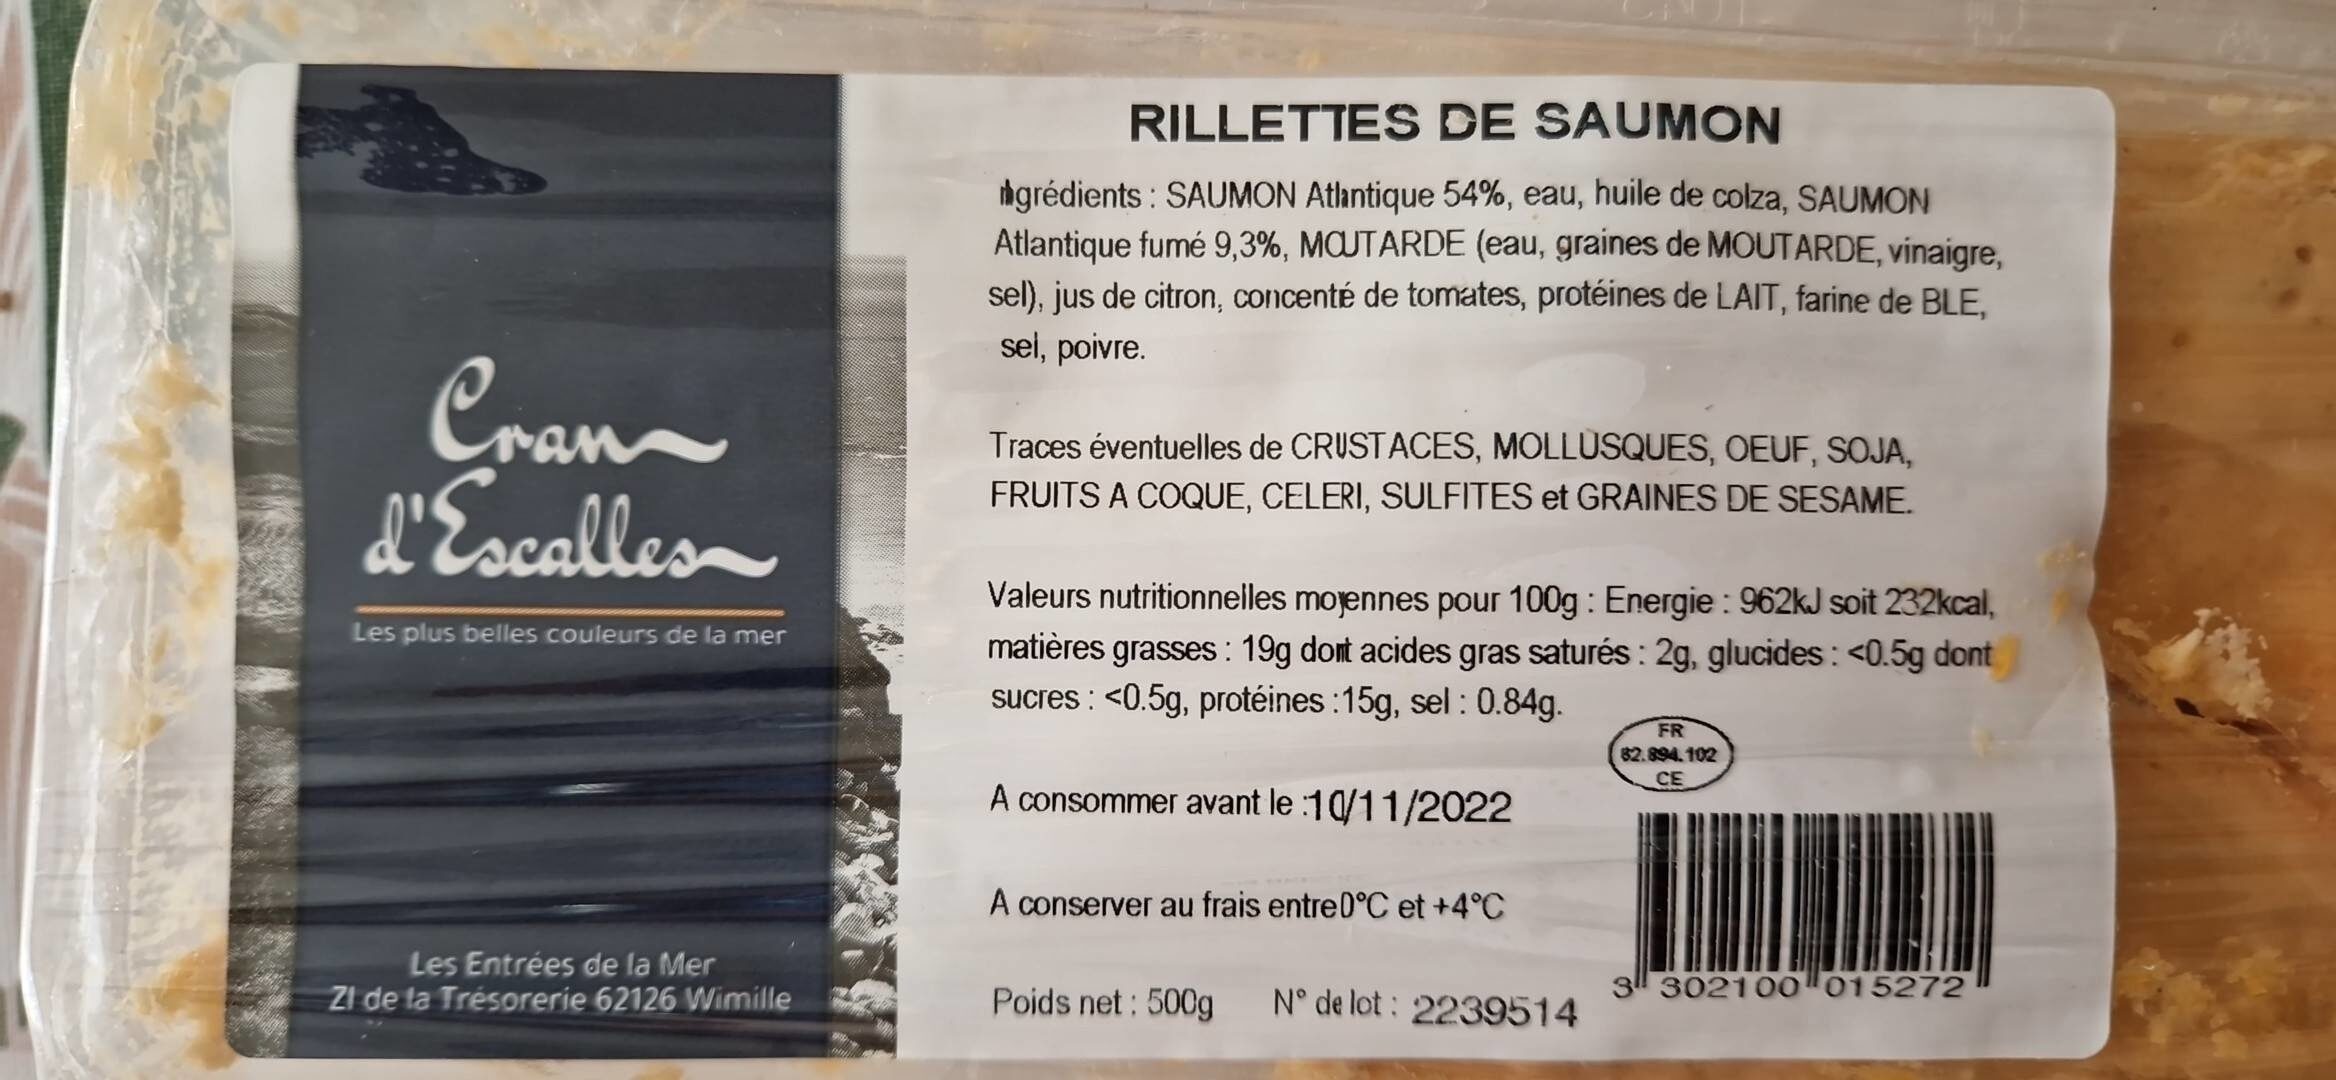 Rillettes de saumon - Produkt - fr